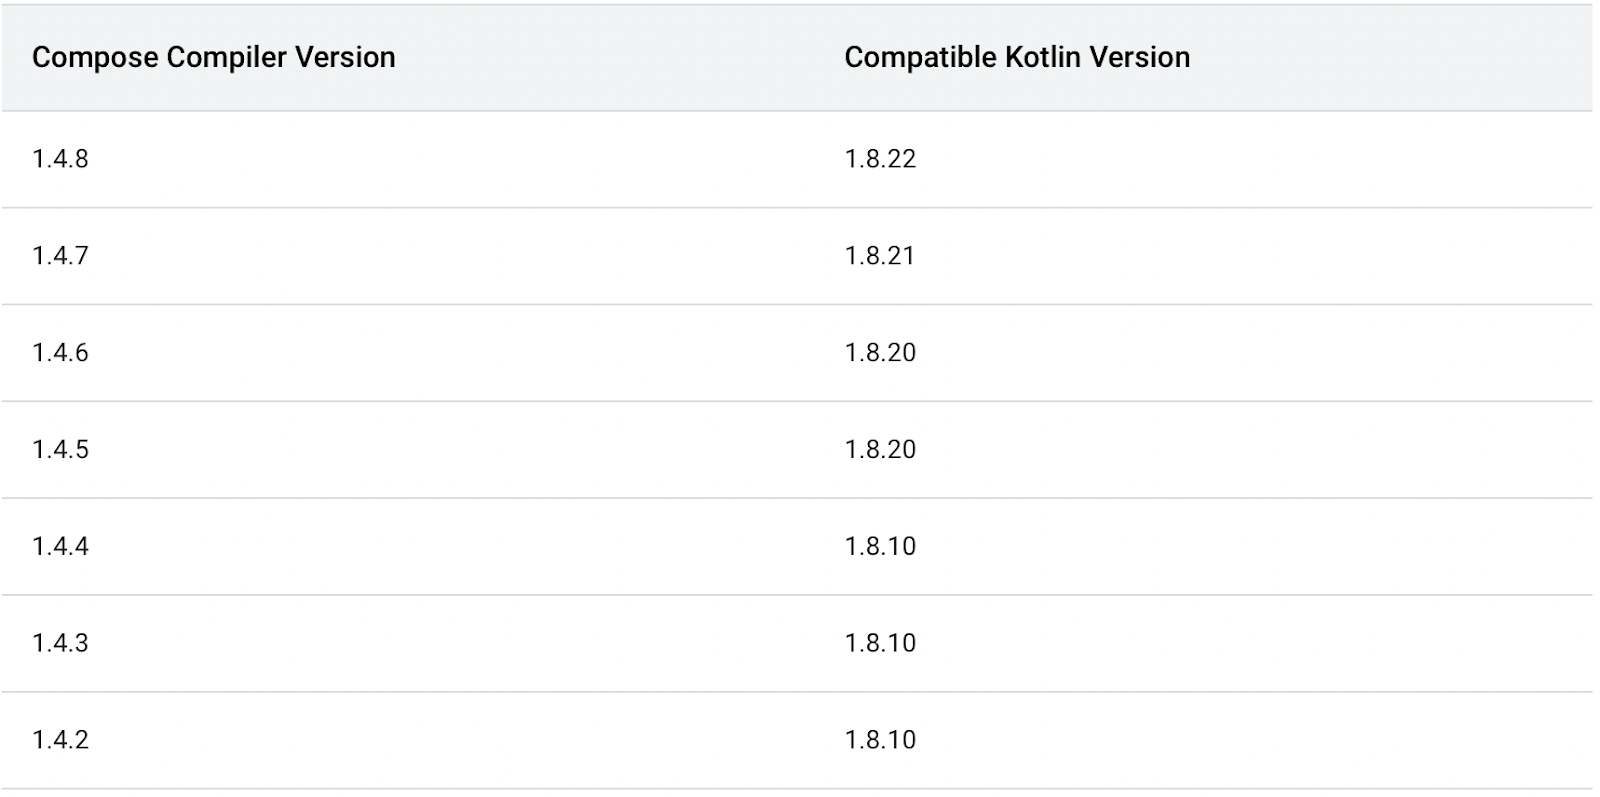 Совместимость некоторых версий Compose Compiler и Kotlin